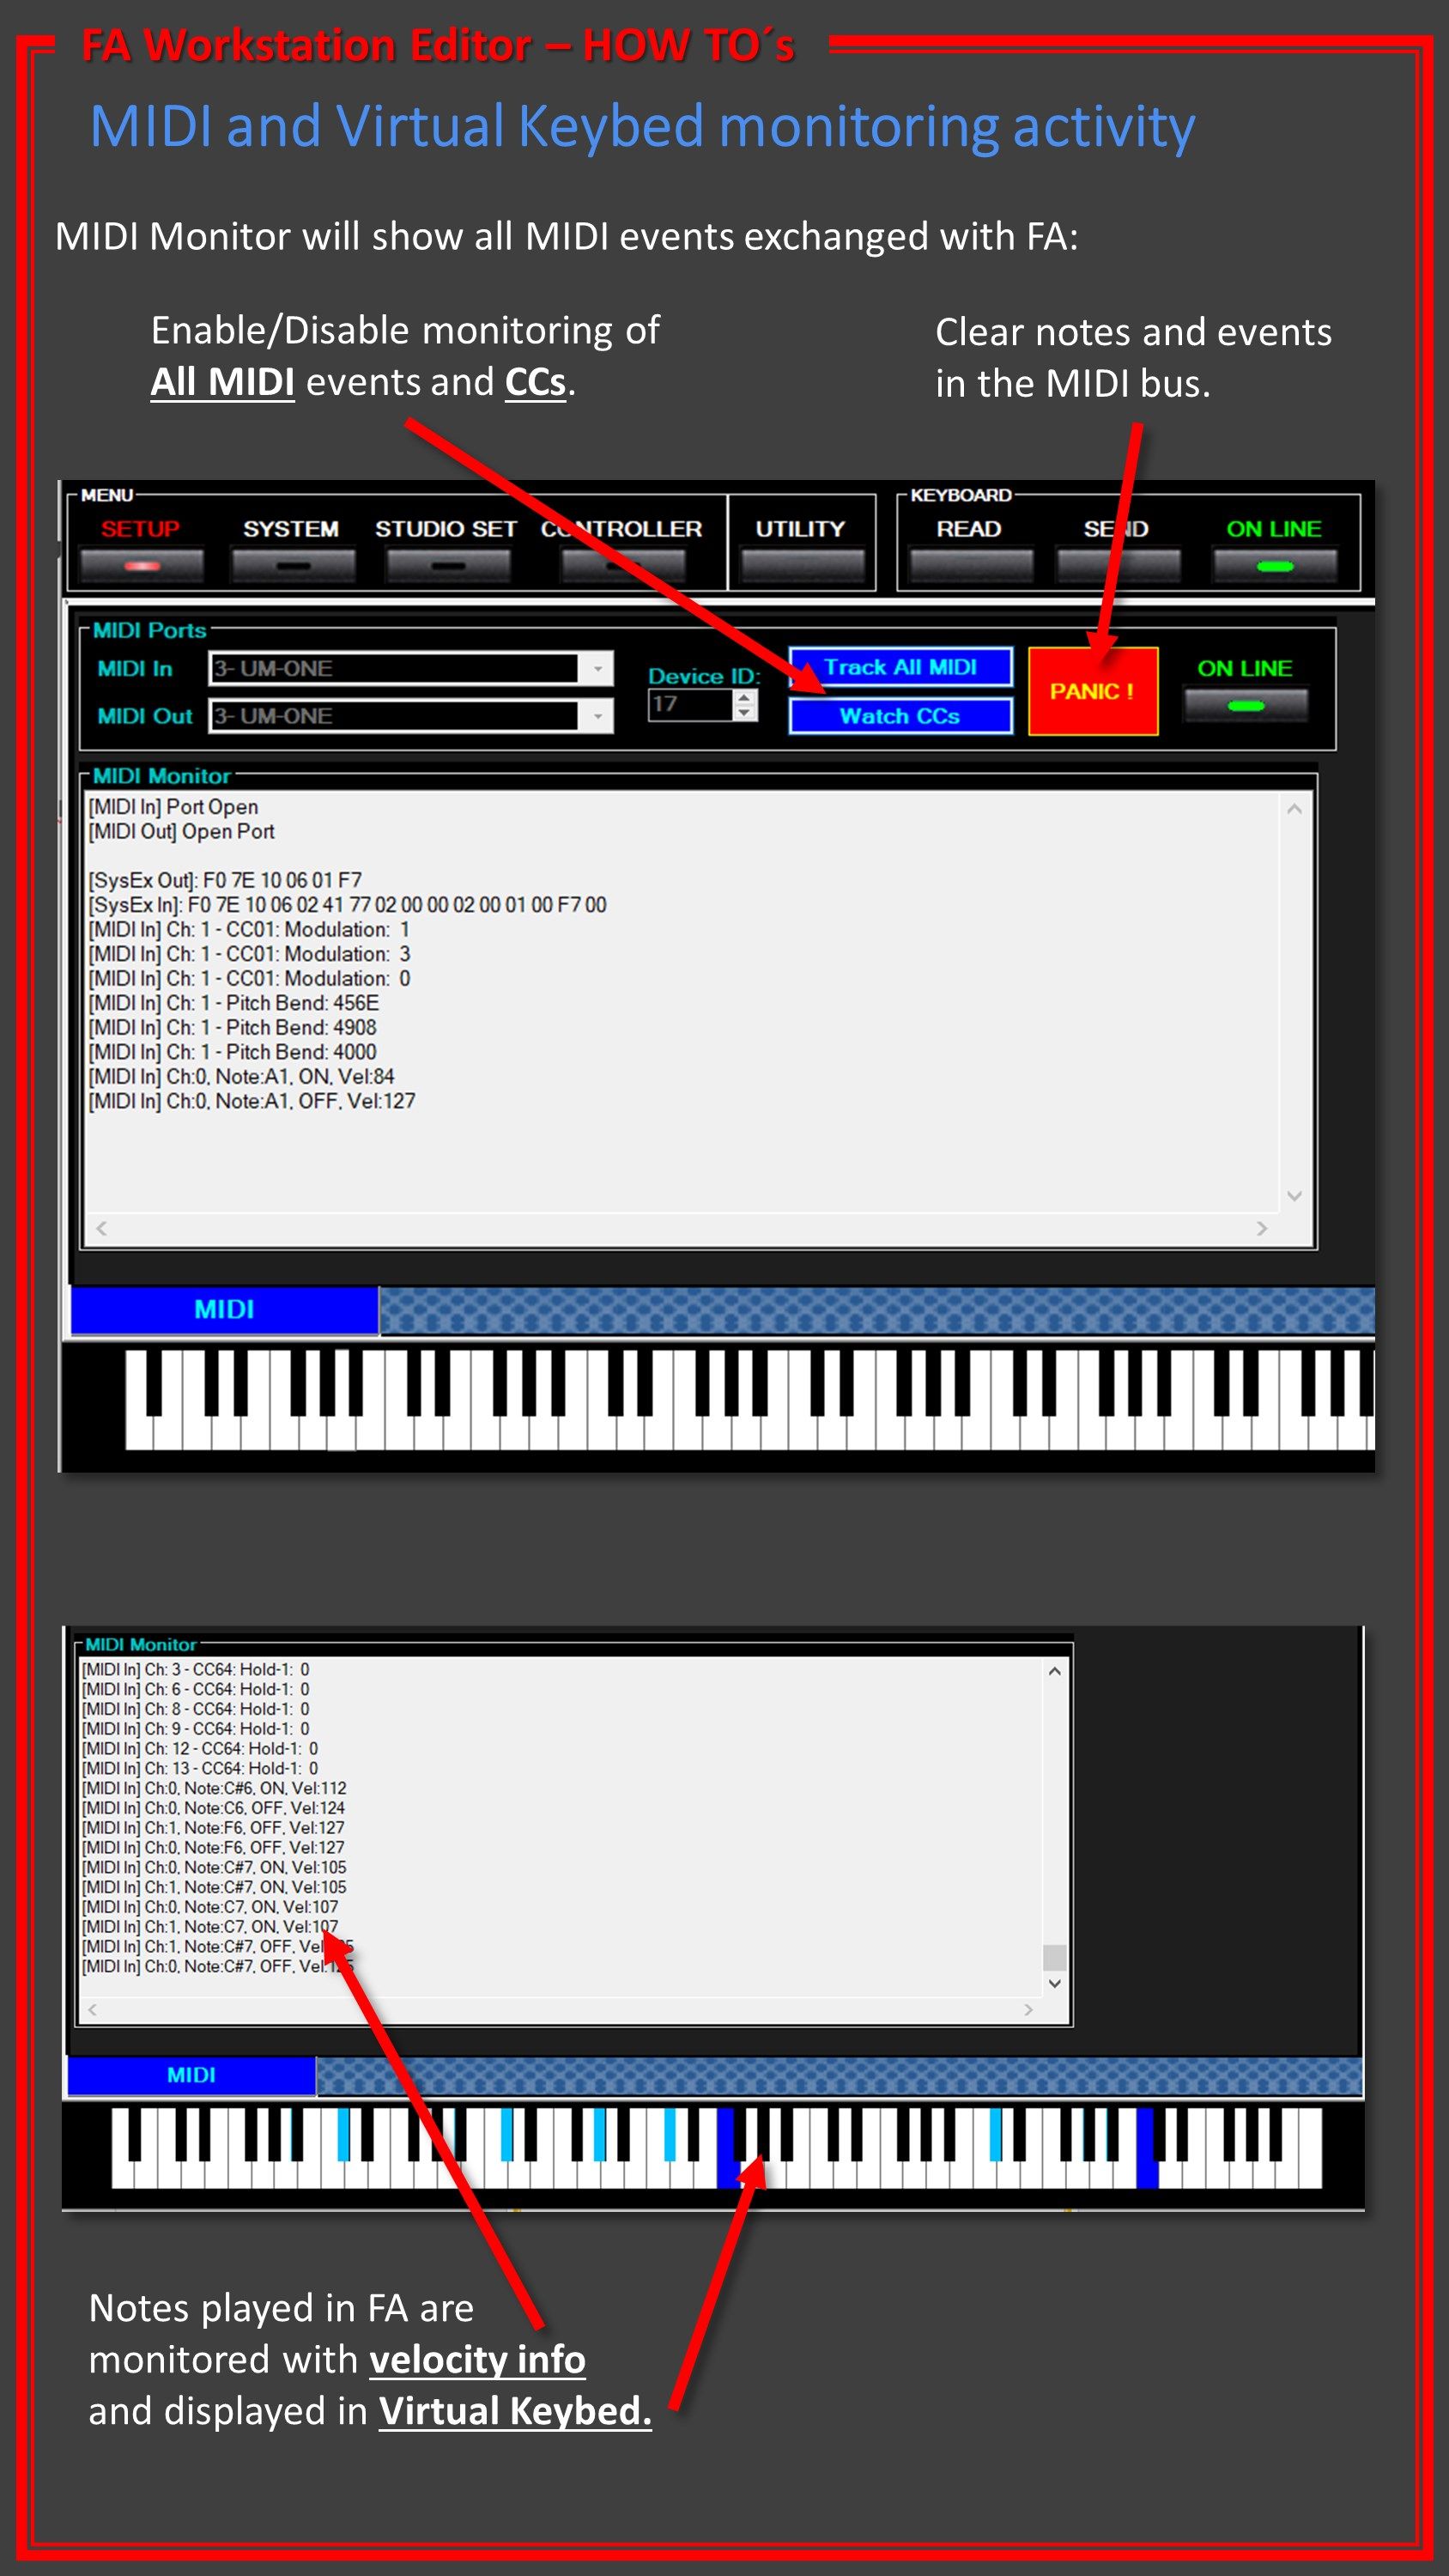 MIDI and Virtual Keybed activity/monitoring